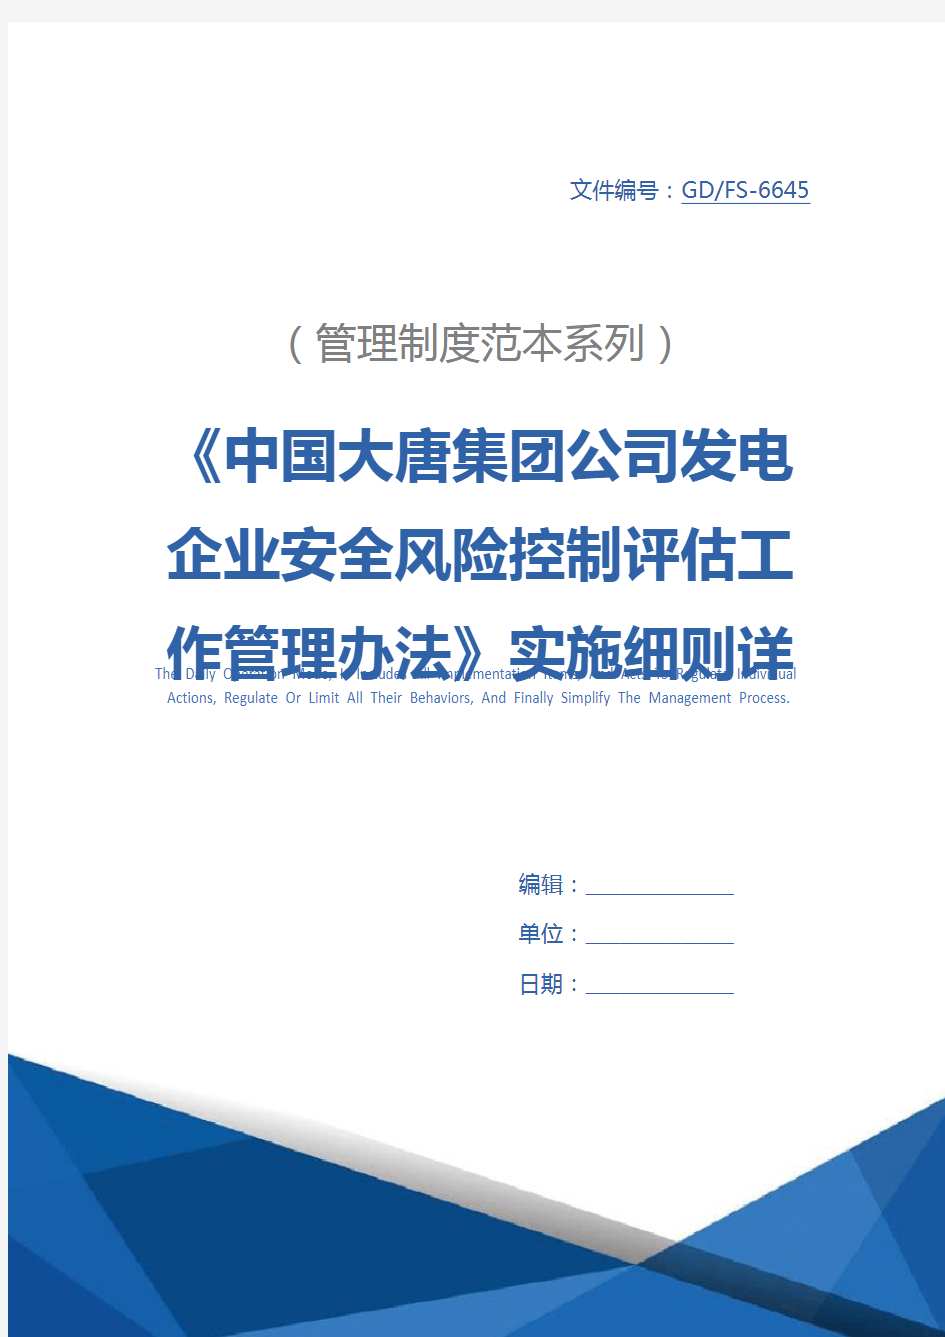 《中国大唐集团公司发电企业安全风险控制评估工作管理办法》实施细则详细版